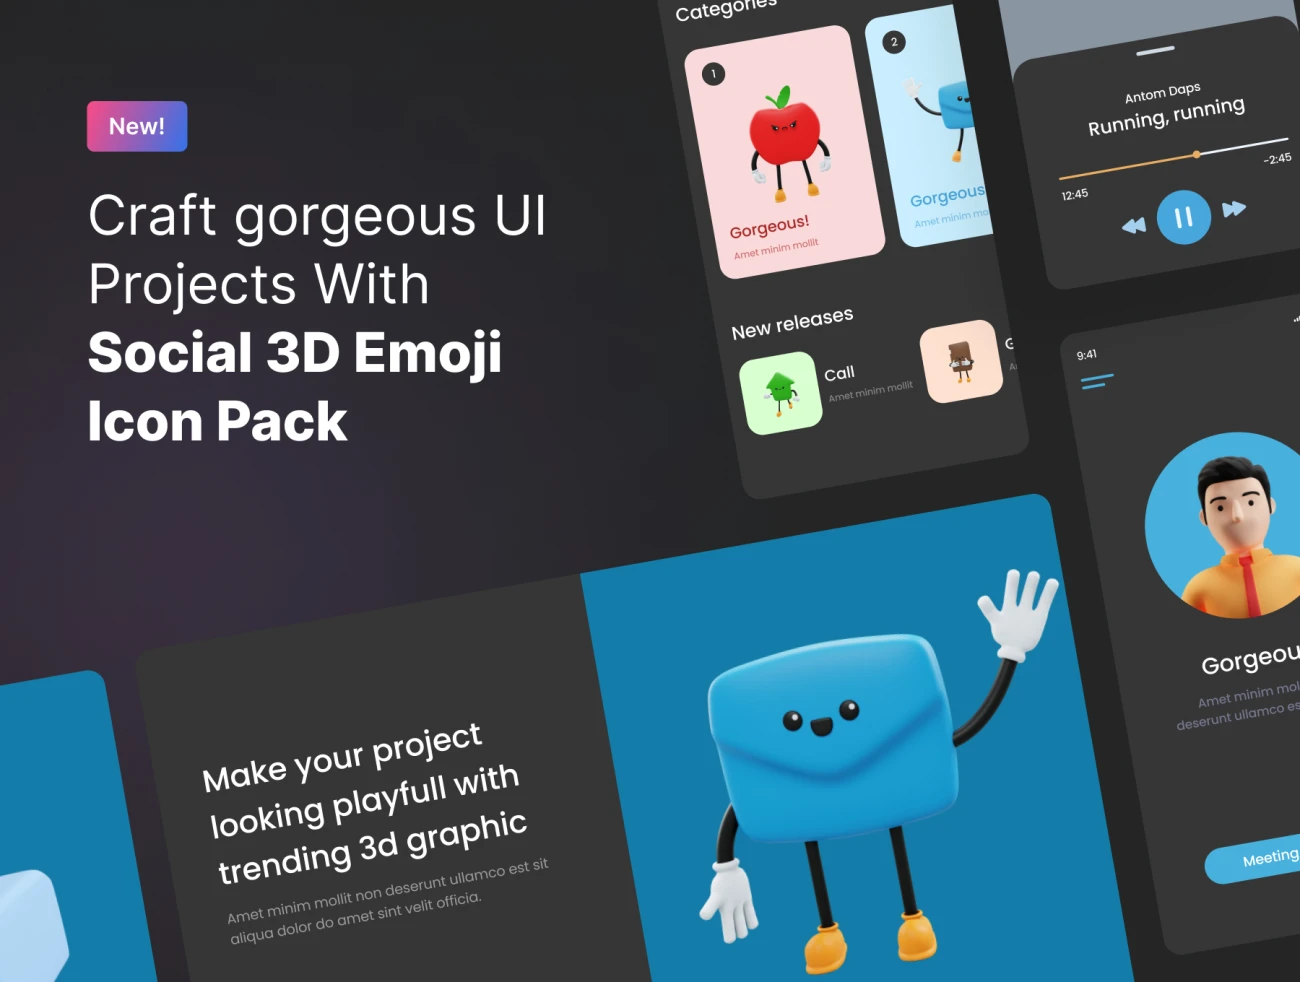 350款社交表情包3D模型图标素材下载 Social Media Emoji Character – Premium 3D Emoji for Social Media  .blender插图3